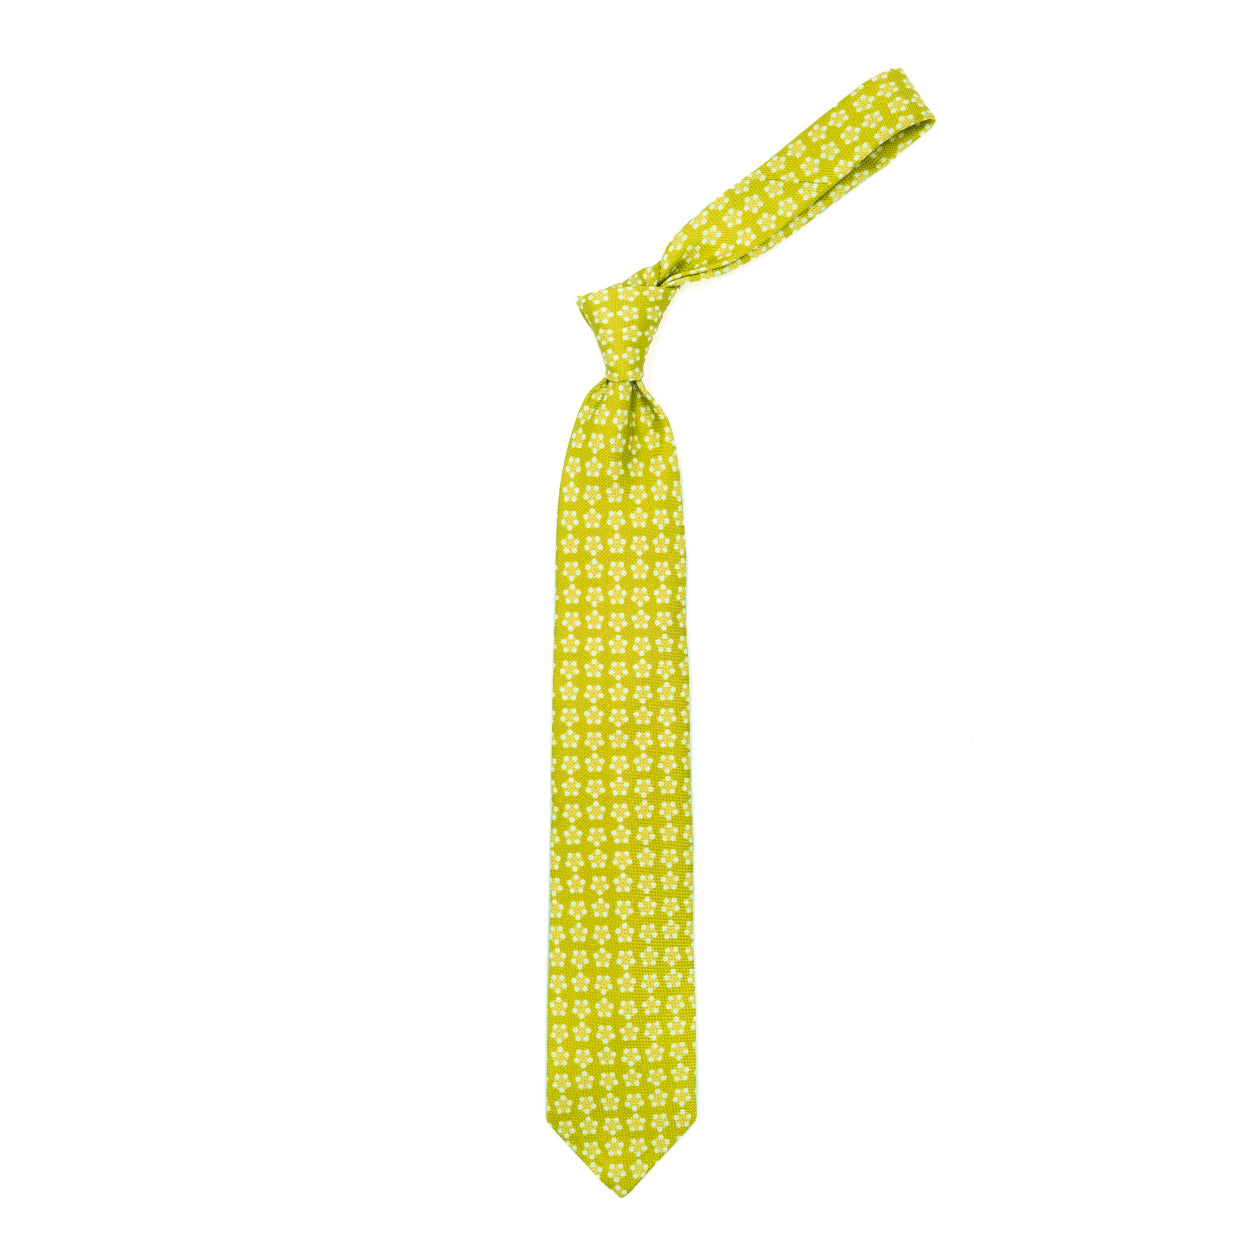 Cravatta gialla con fiori bianchi